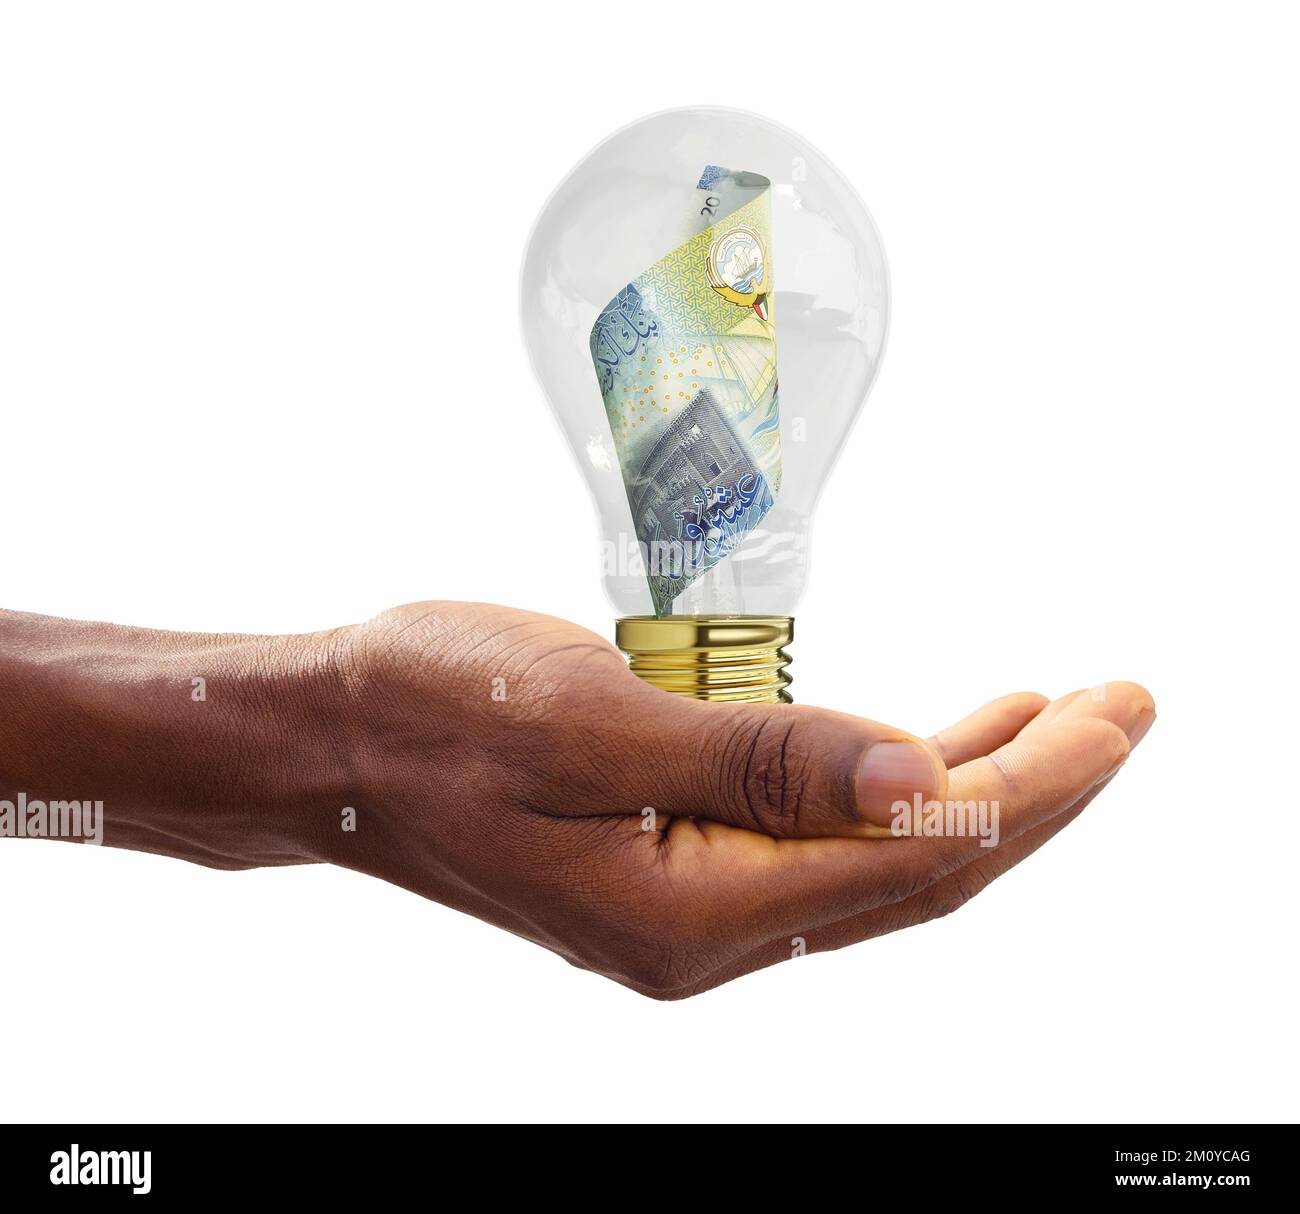 Schwarze Hand hält 3D-Dinar-Note aus Kuwait in transparenter Glühbirne, kreatives Denken. Geld verdienen, indem man Probleme löst. Ich habe eine Idee Stockfoto